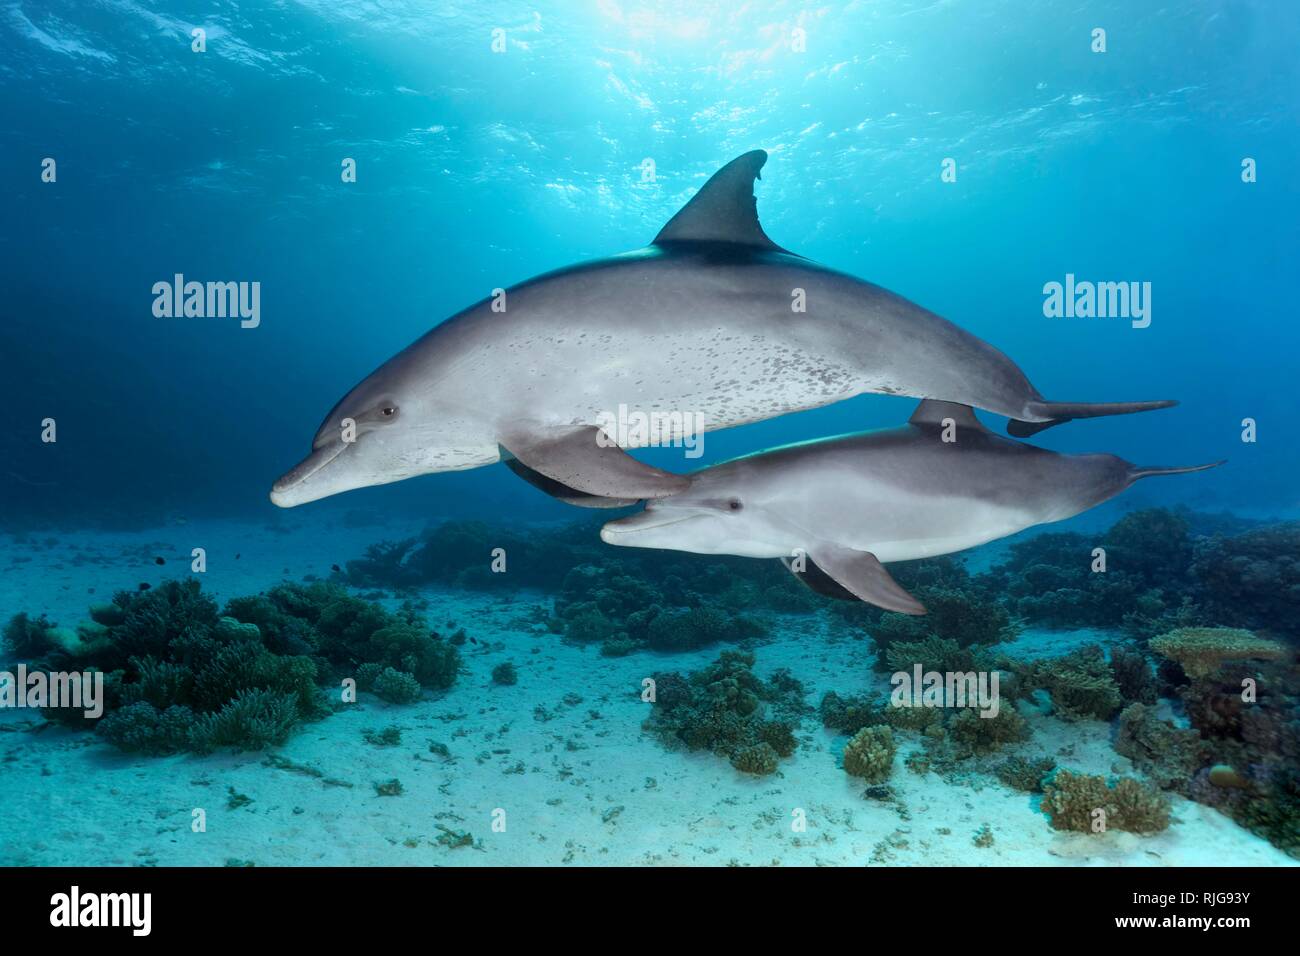 Delfines nariz de botella (Tursiops truncatus), el embalse de la pantorrilla, nadando en aguas poco profundas a lo largo de arrecifes de coral en el sol, mar Rojo, Egipto Foto de stock